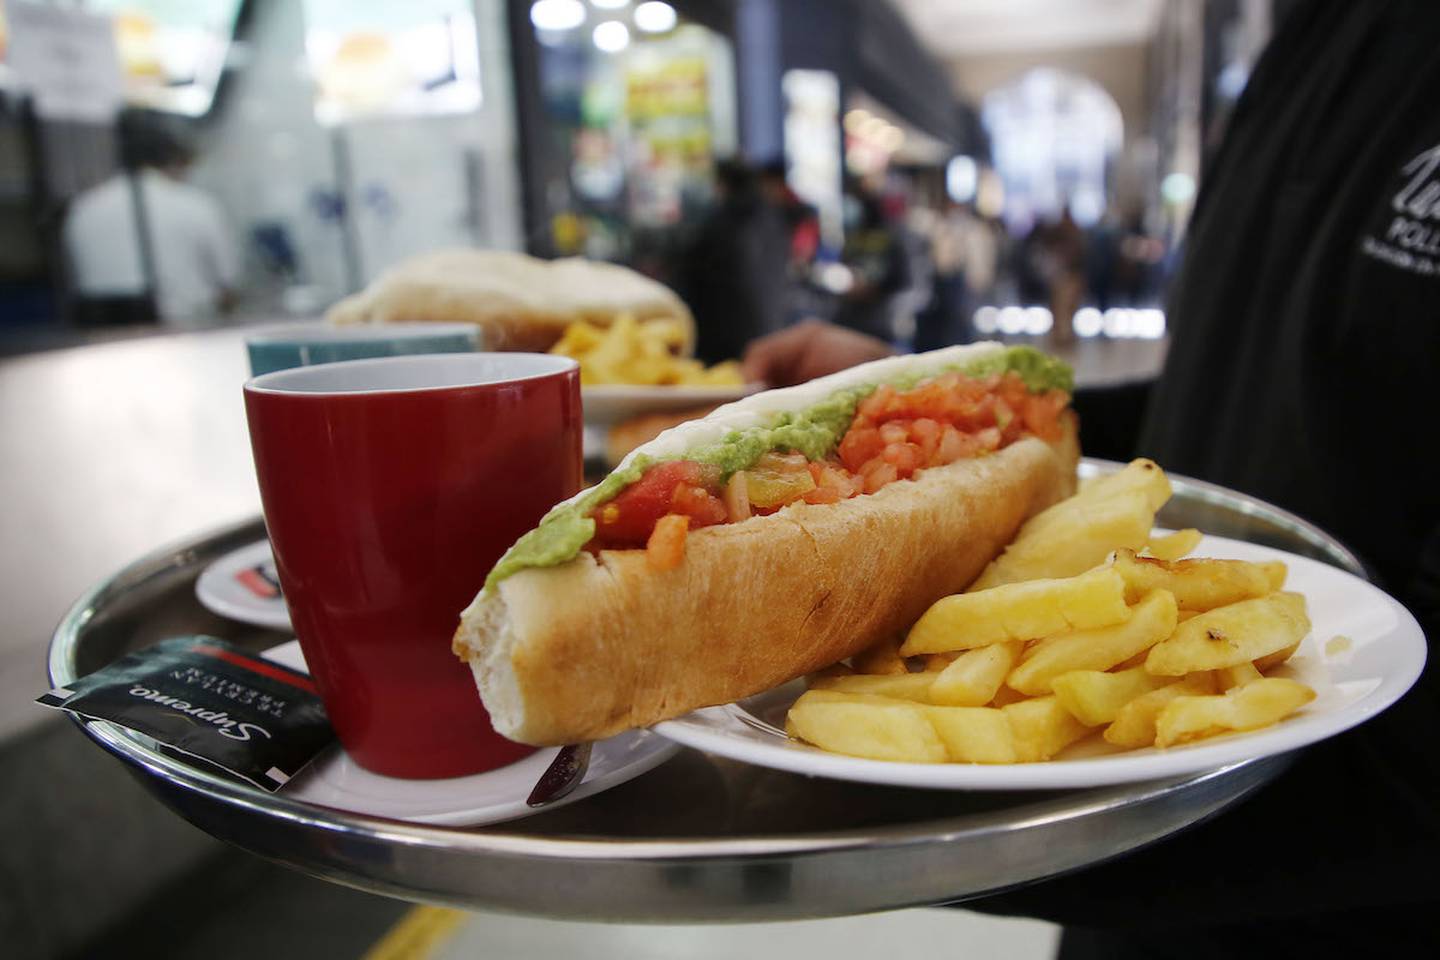 Completo, popular sándwich chileno no fue considerado entre los mejores de Sudamérica según Chat GPT.